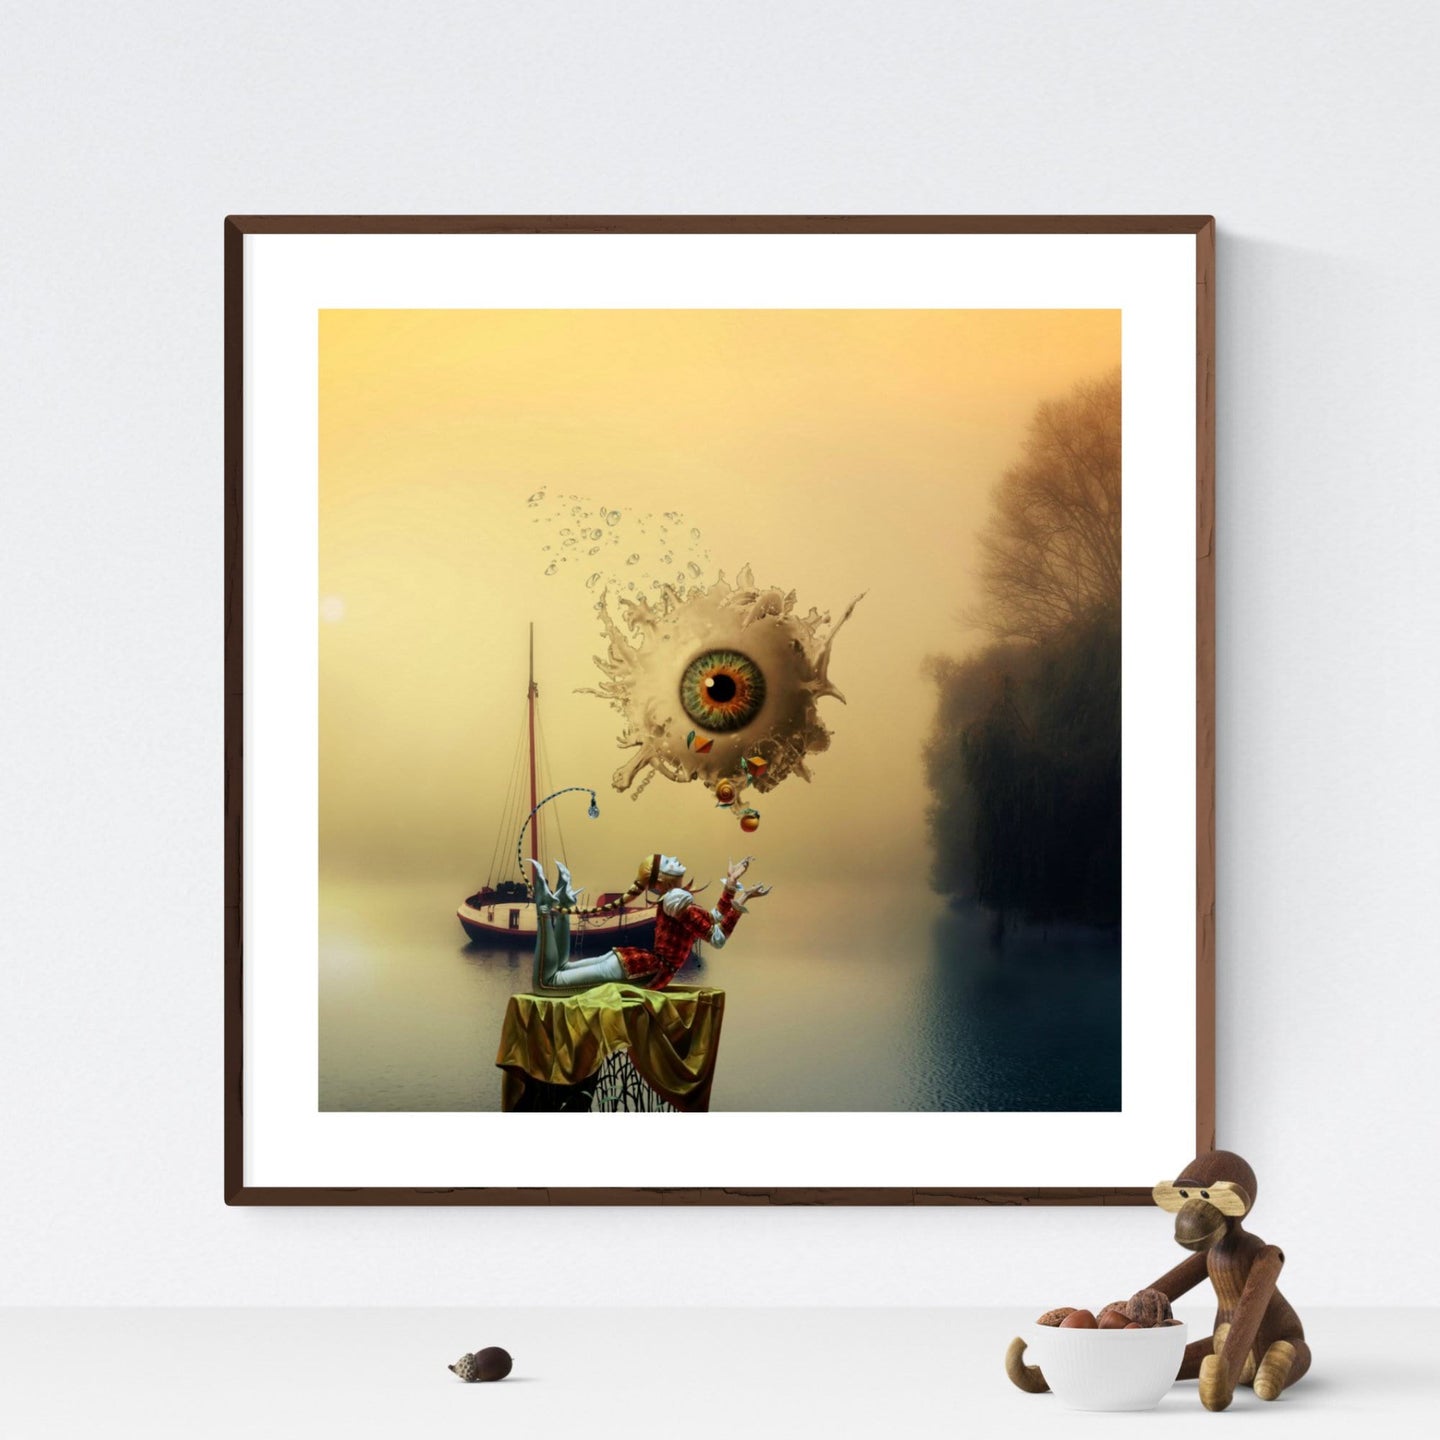 Pierrot the Juggler - original surrealistisk kunst, der viser en liggende junglør, der juglerer foran et størt svævende øje, som flyder ud. I baggrunden anes en gammel båd i vandet - af billedkunstner og surrealist Hugo Sax